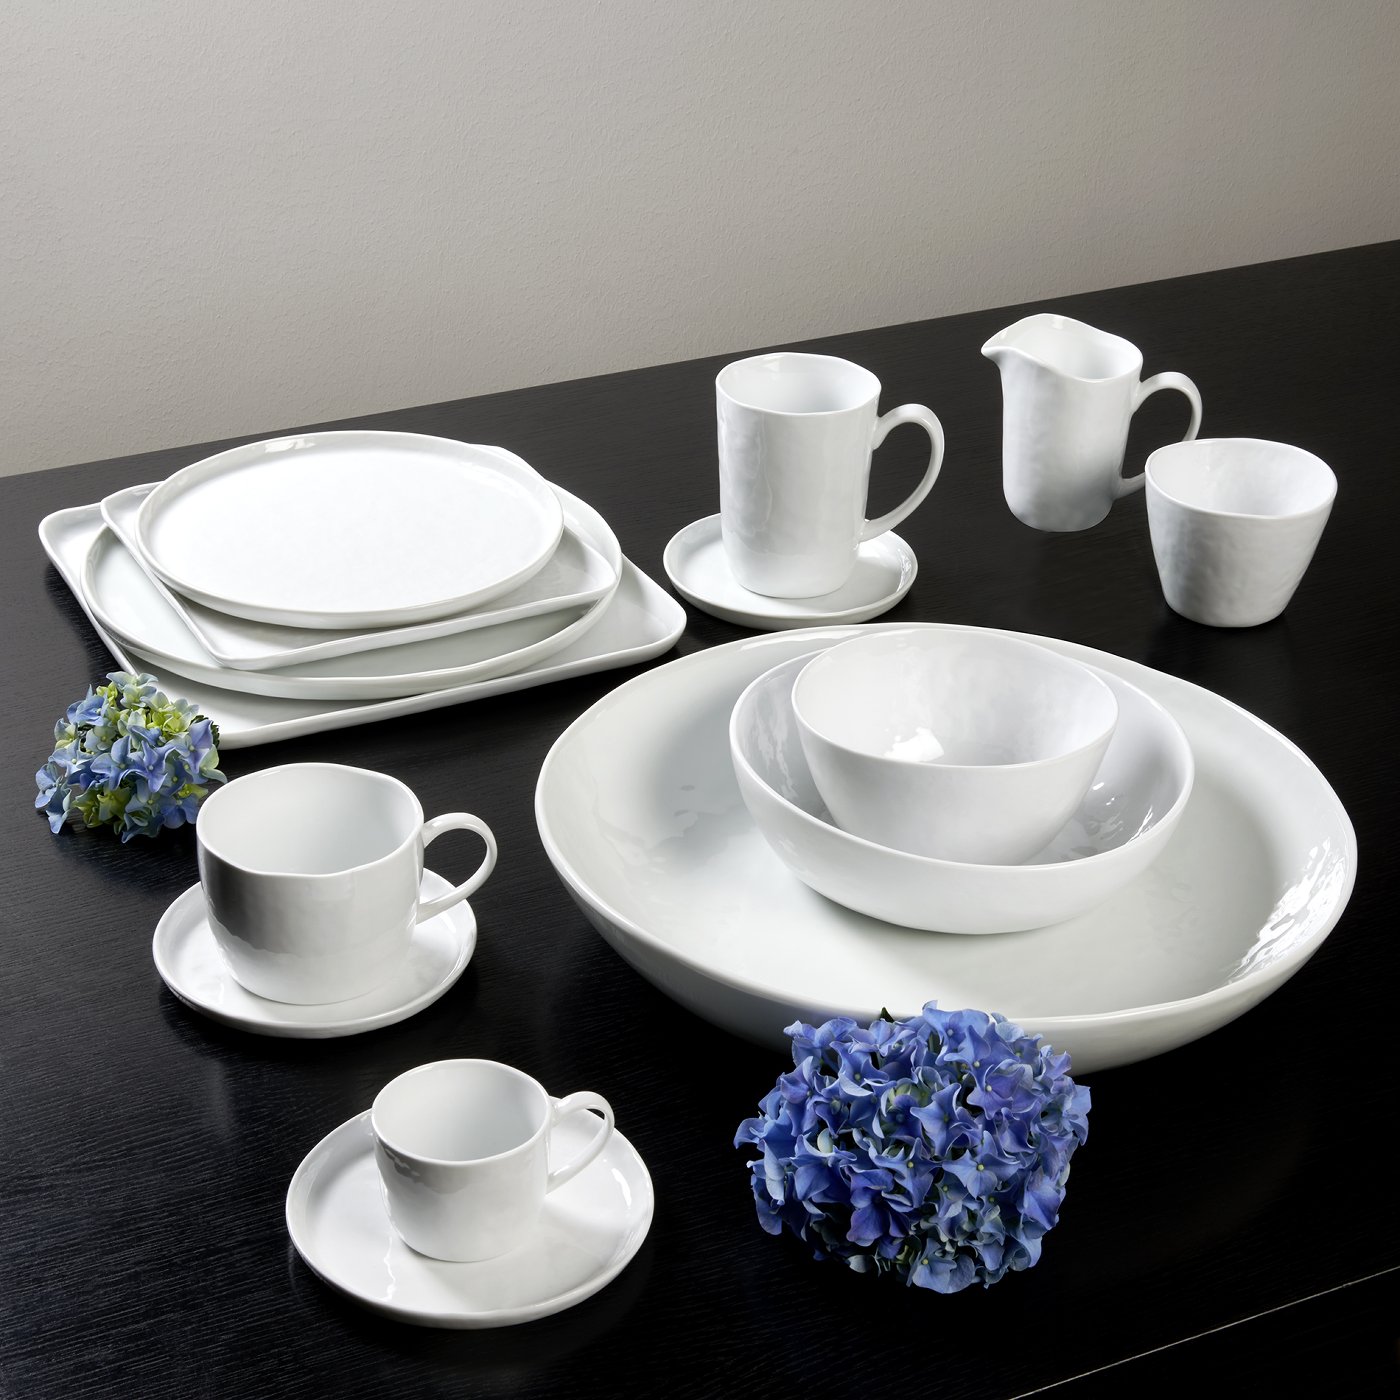 Piana bowl porcelain, white Dia 20.5 cm, H 6 cm